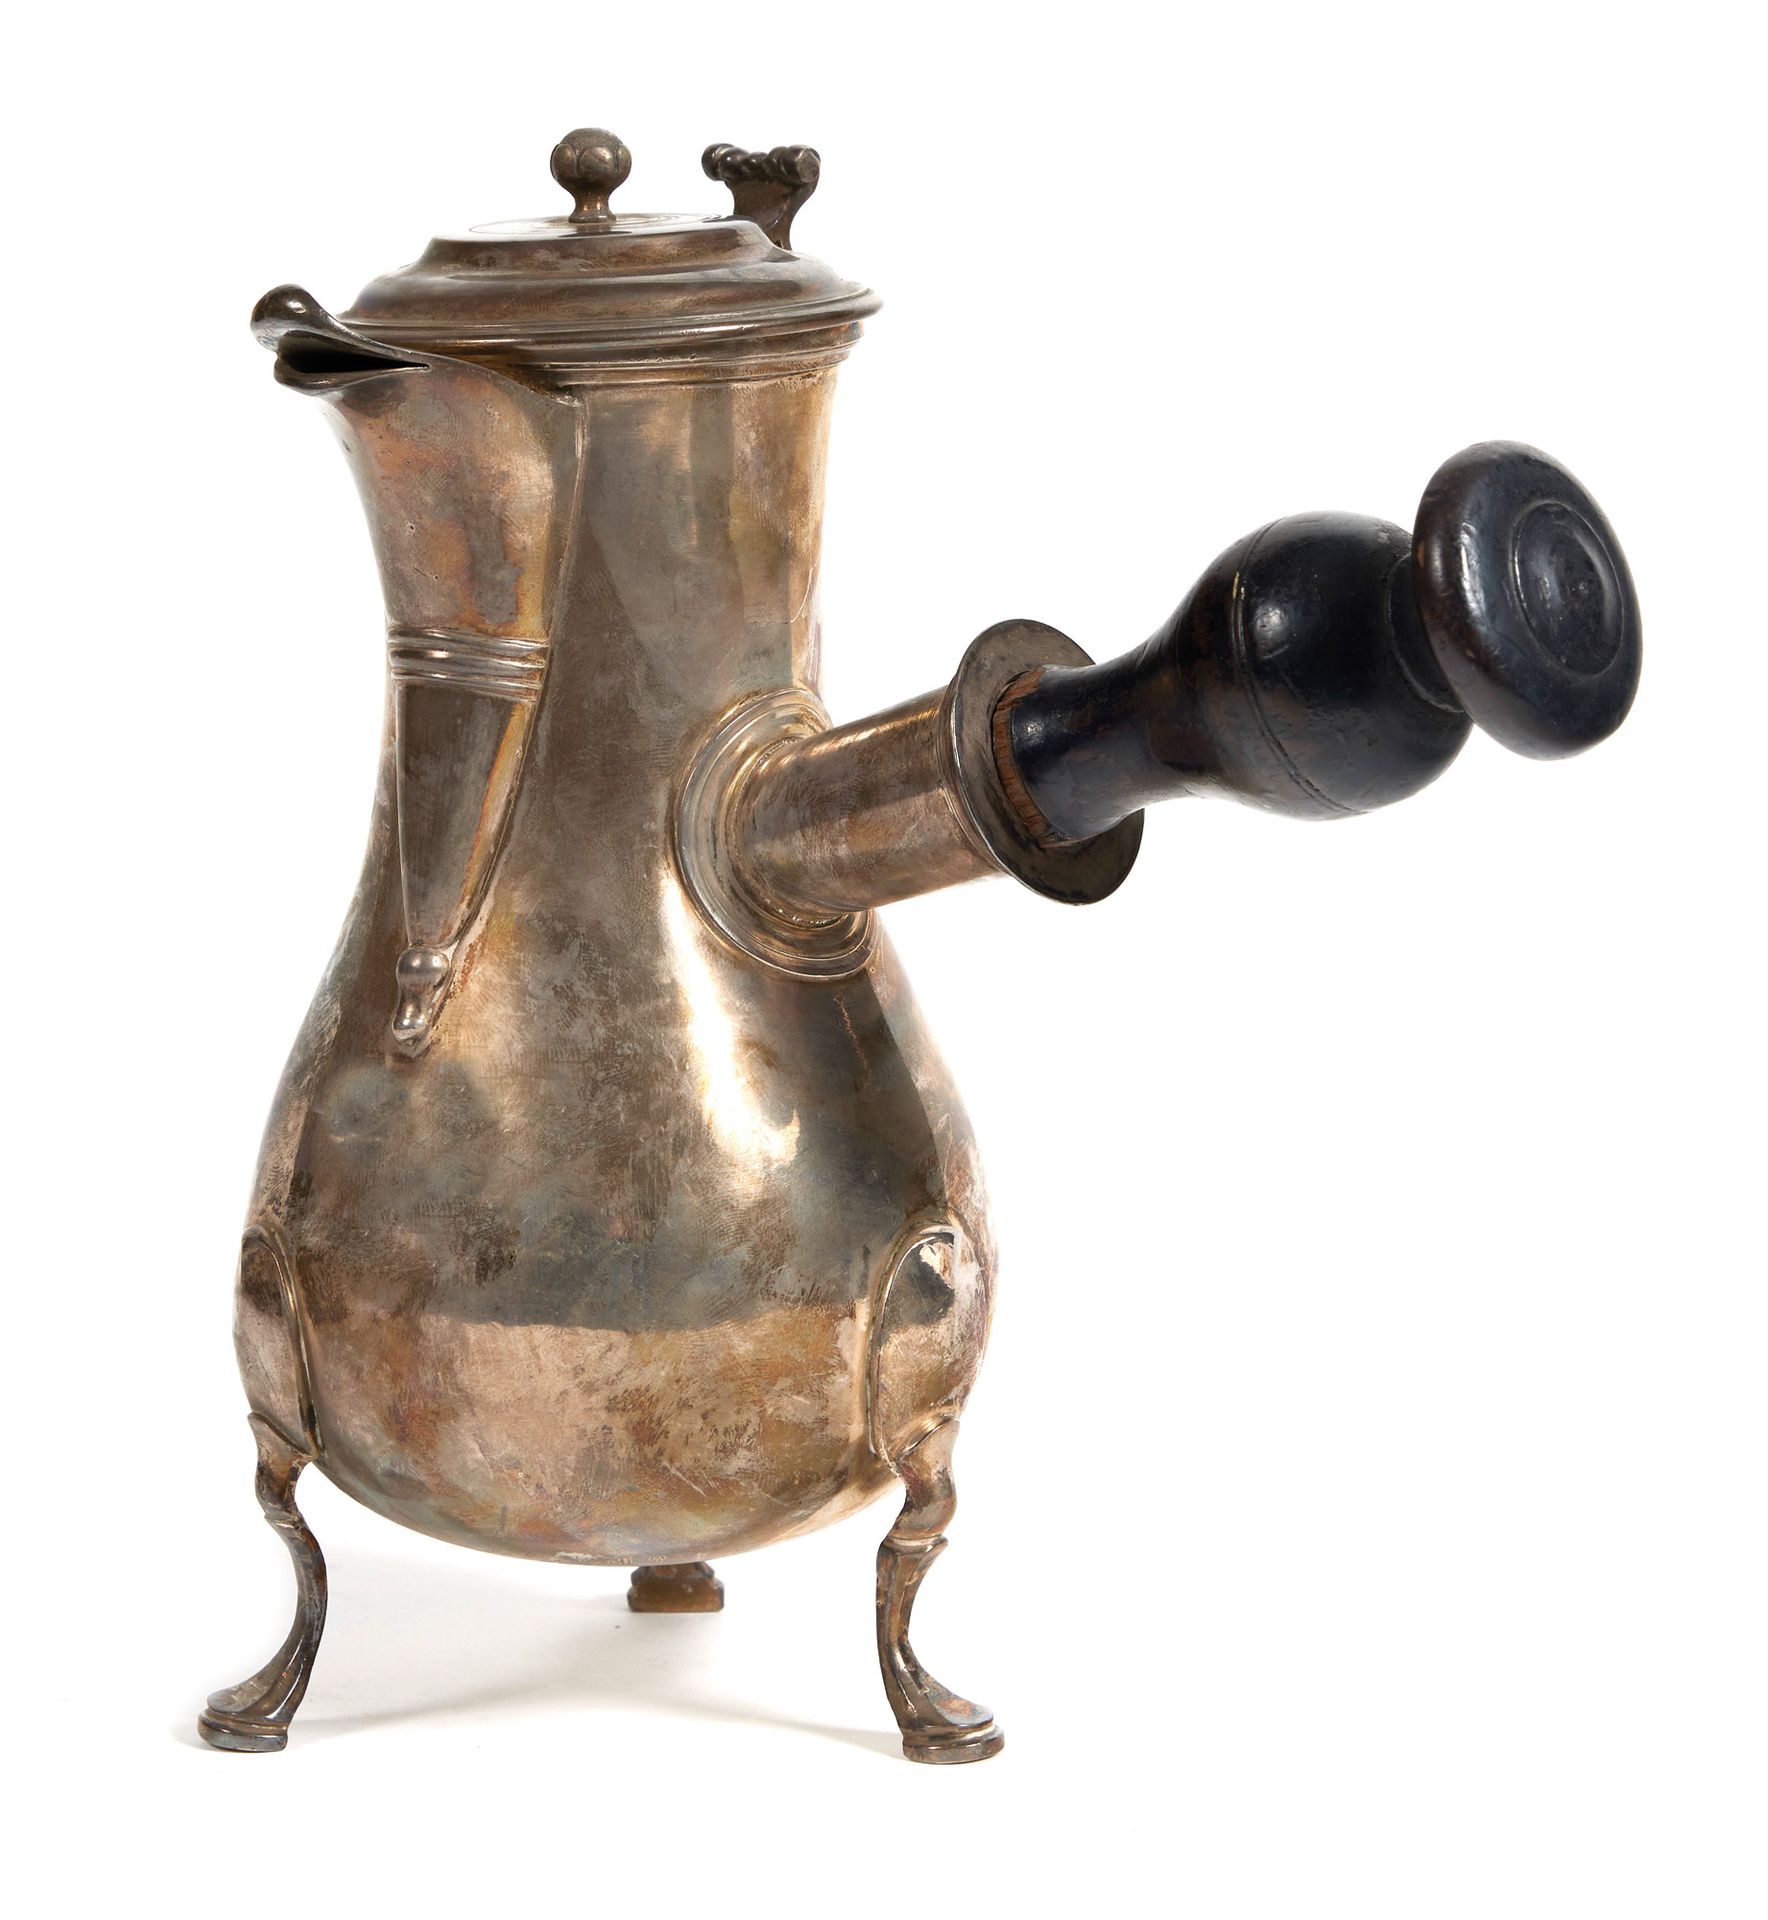 Cafetière en argent 银色咖啡壶

作者：Marc Bazille，蒙彼利埃，1763-1764年

梨形，有三只马刀脚，侧边的把手在木头上没&hellip;